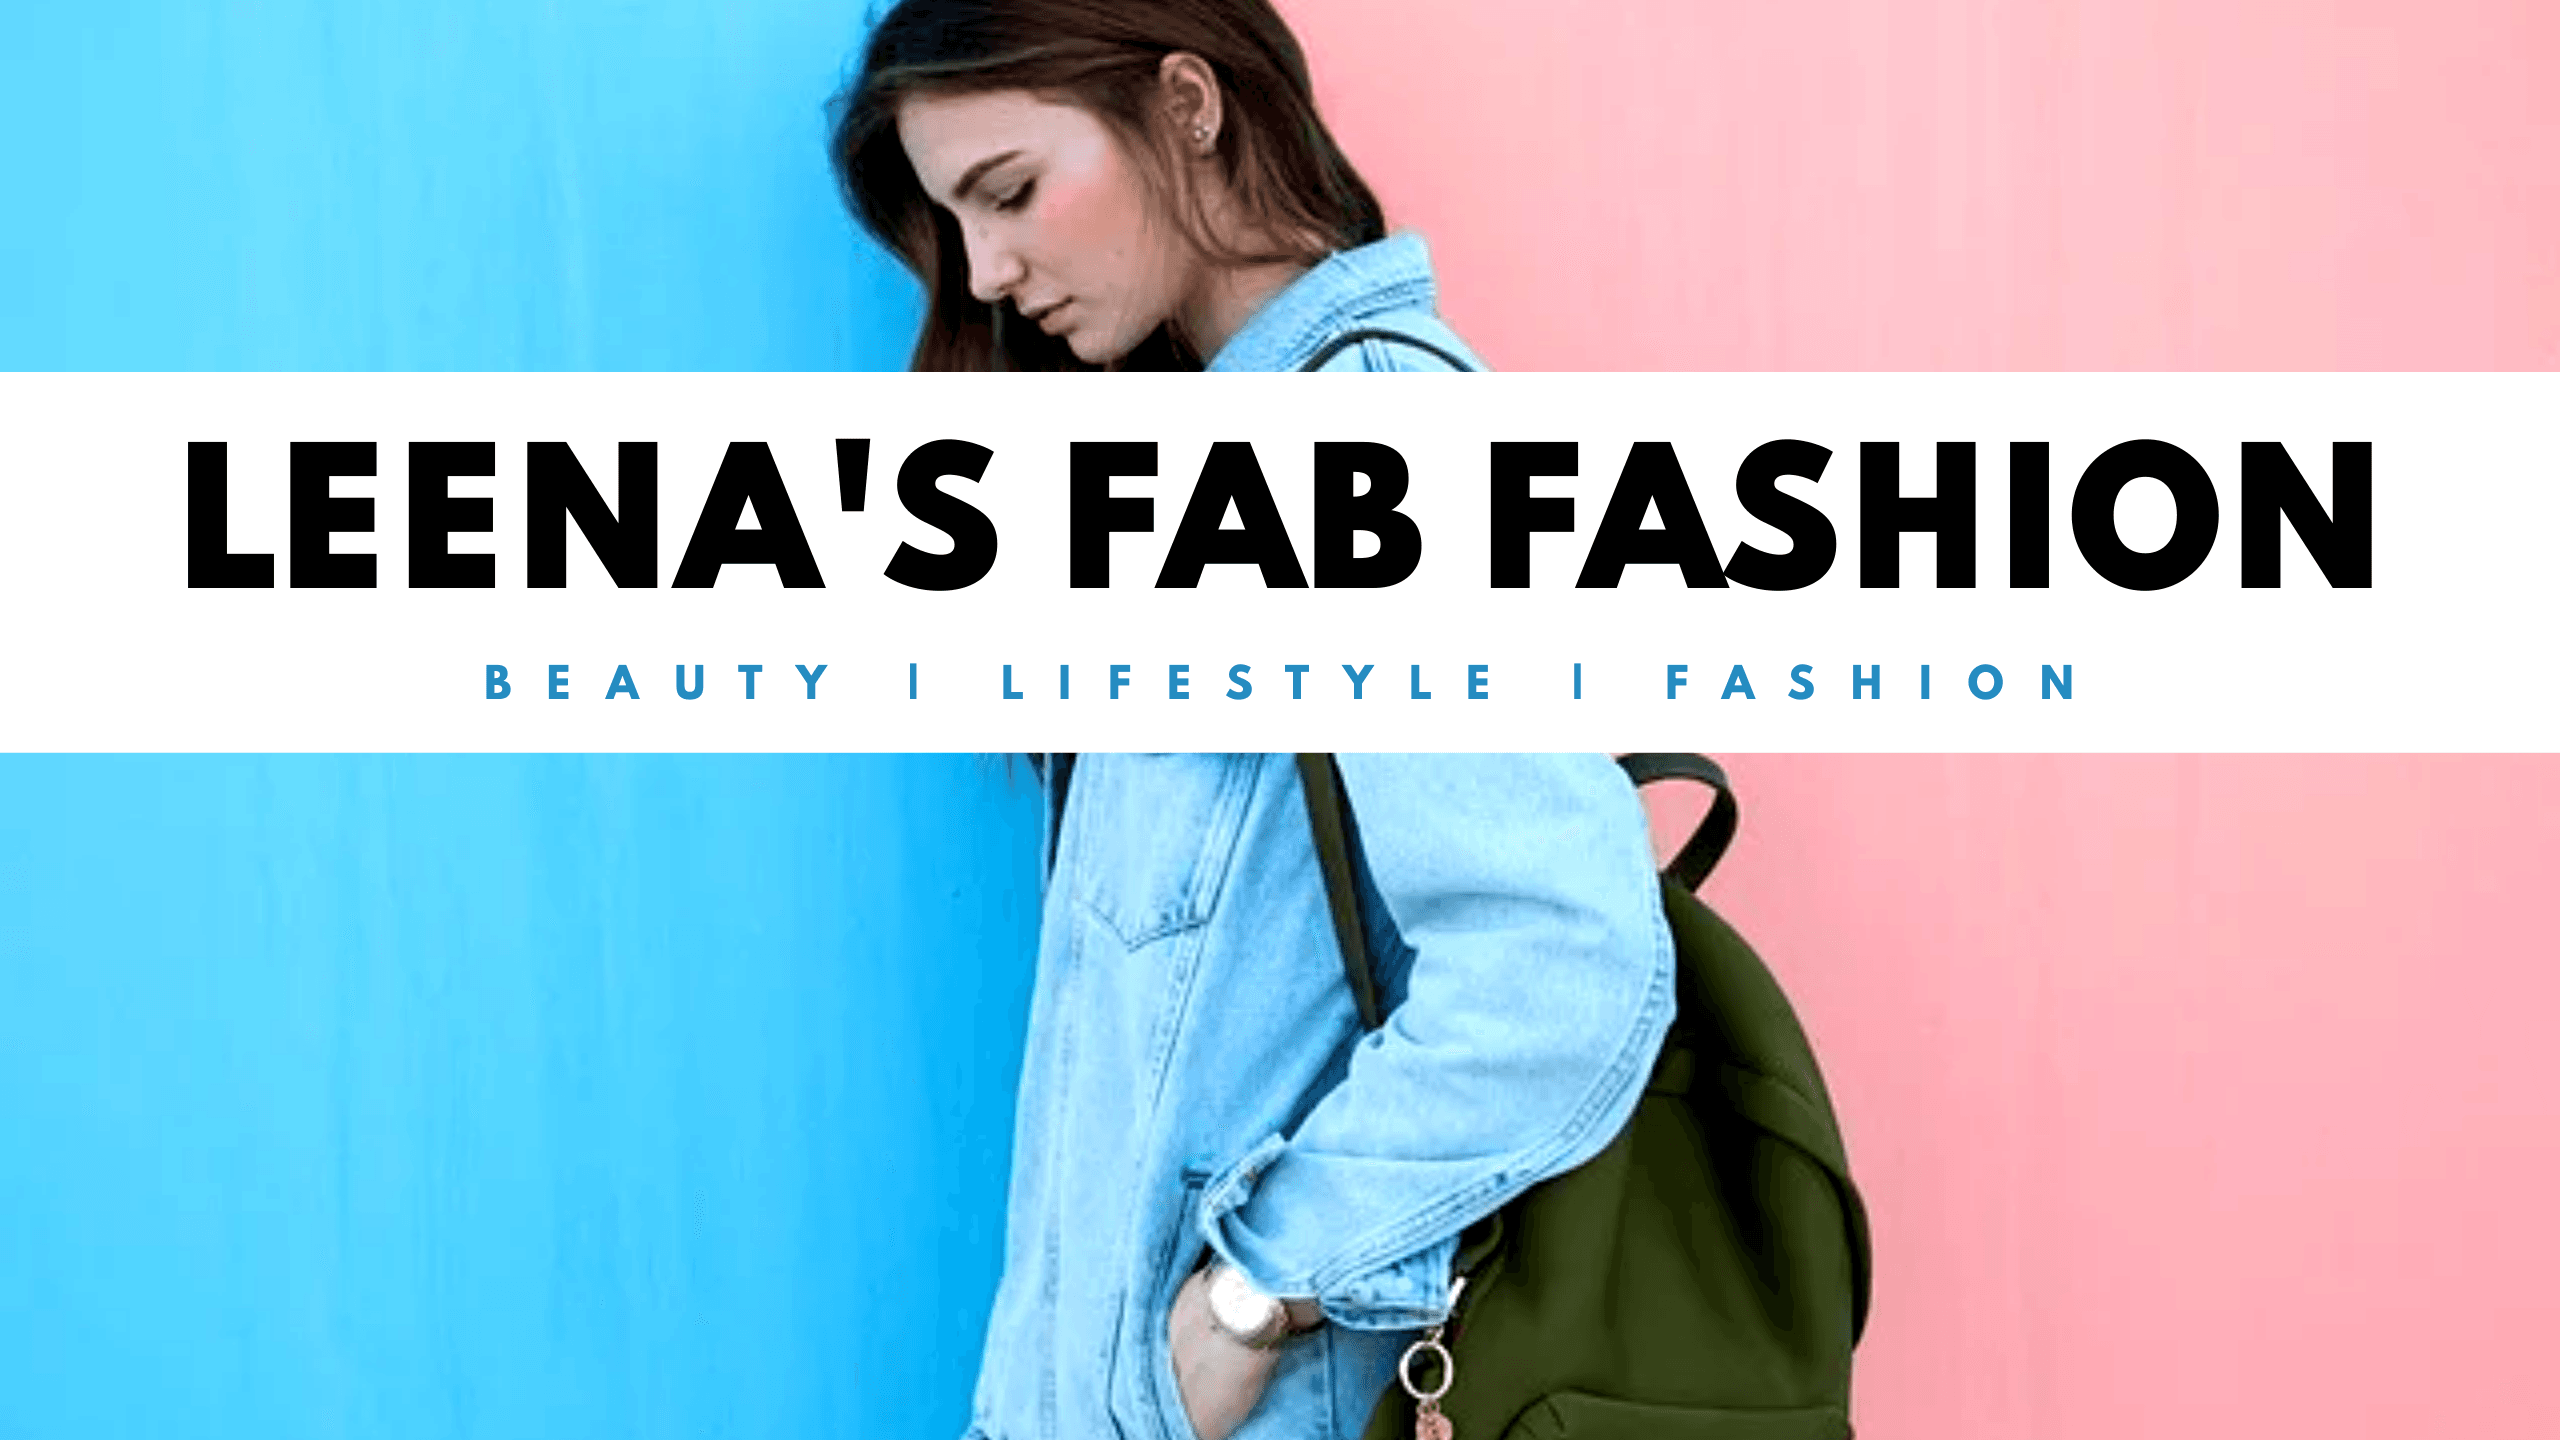 stylish-women-background-leena's-fab-fashion-clothing-and-lifestyle-youtube-channel-art-thumbnail-img